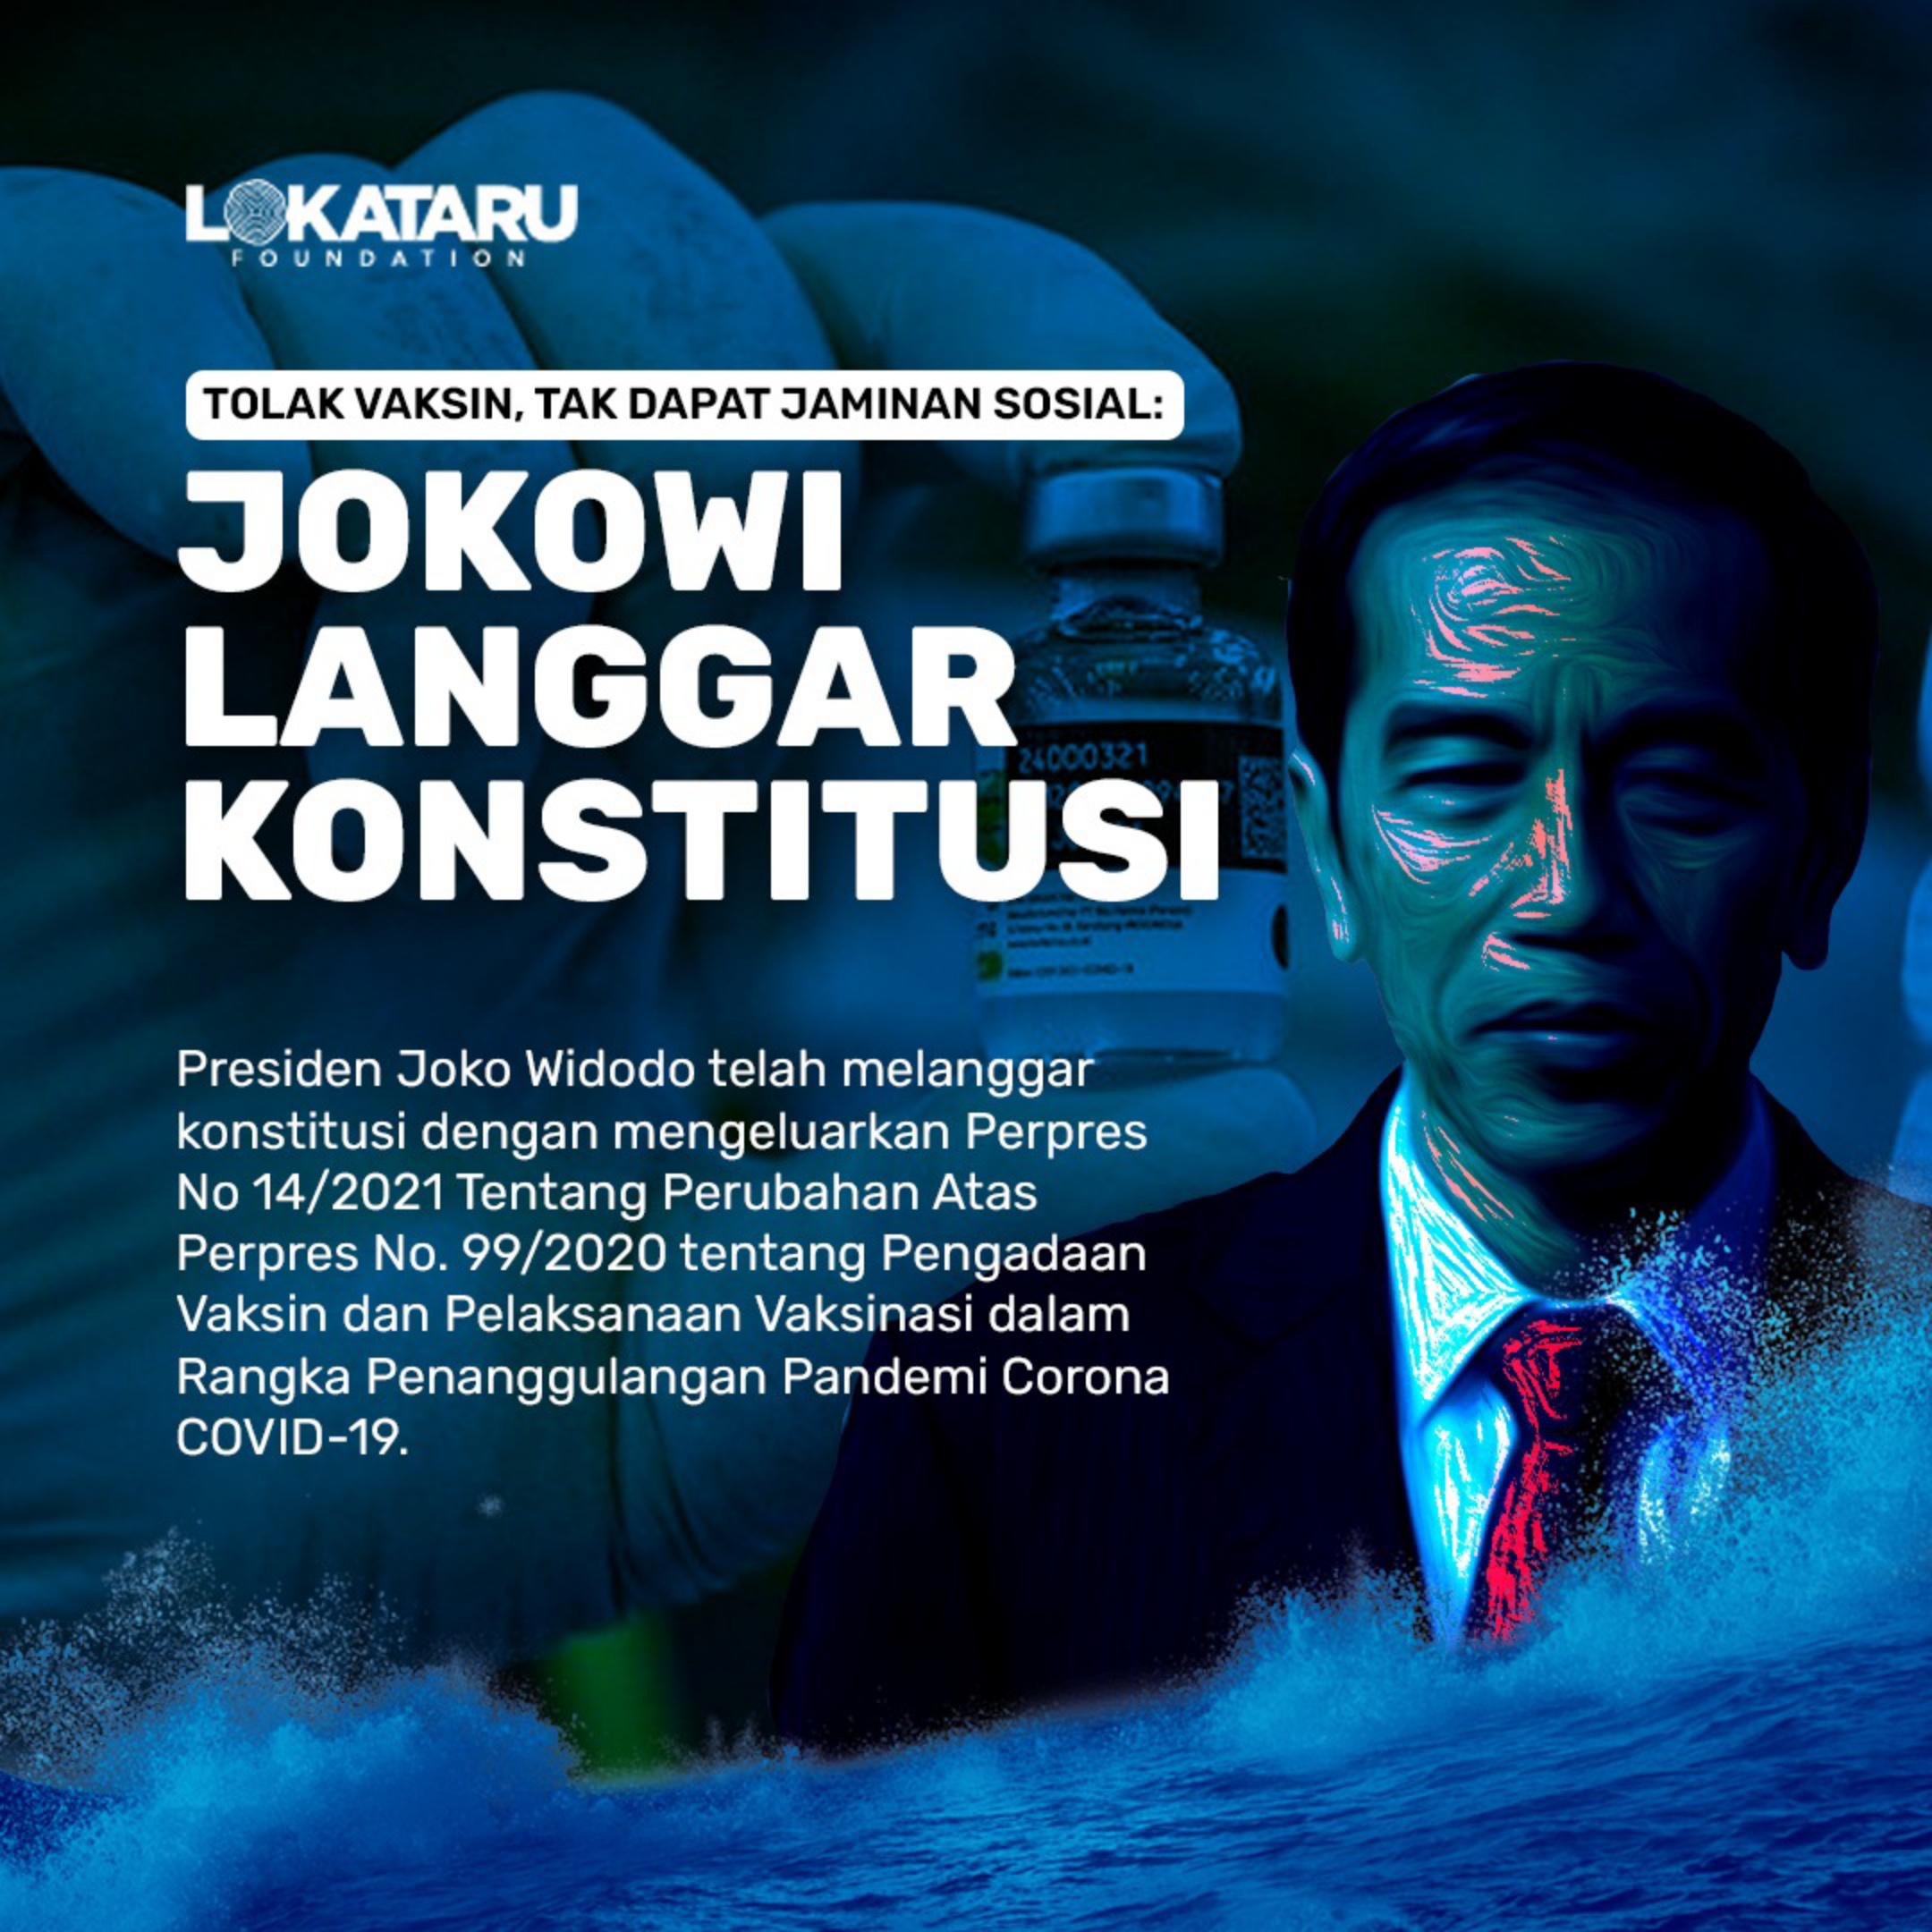 Lokataru Sebut Presiden Jokowi Langgar Konstitusi